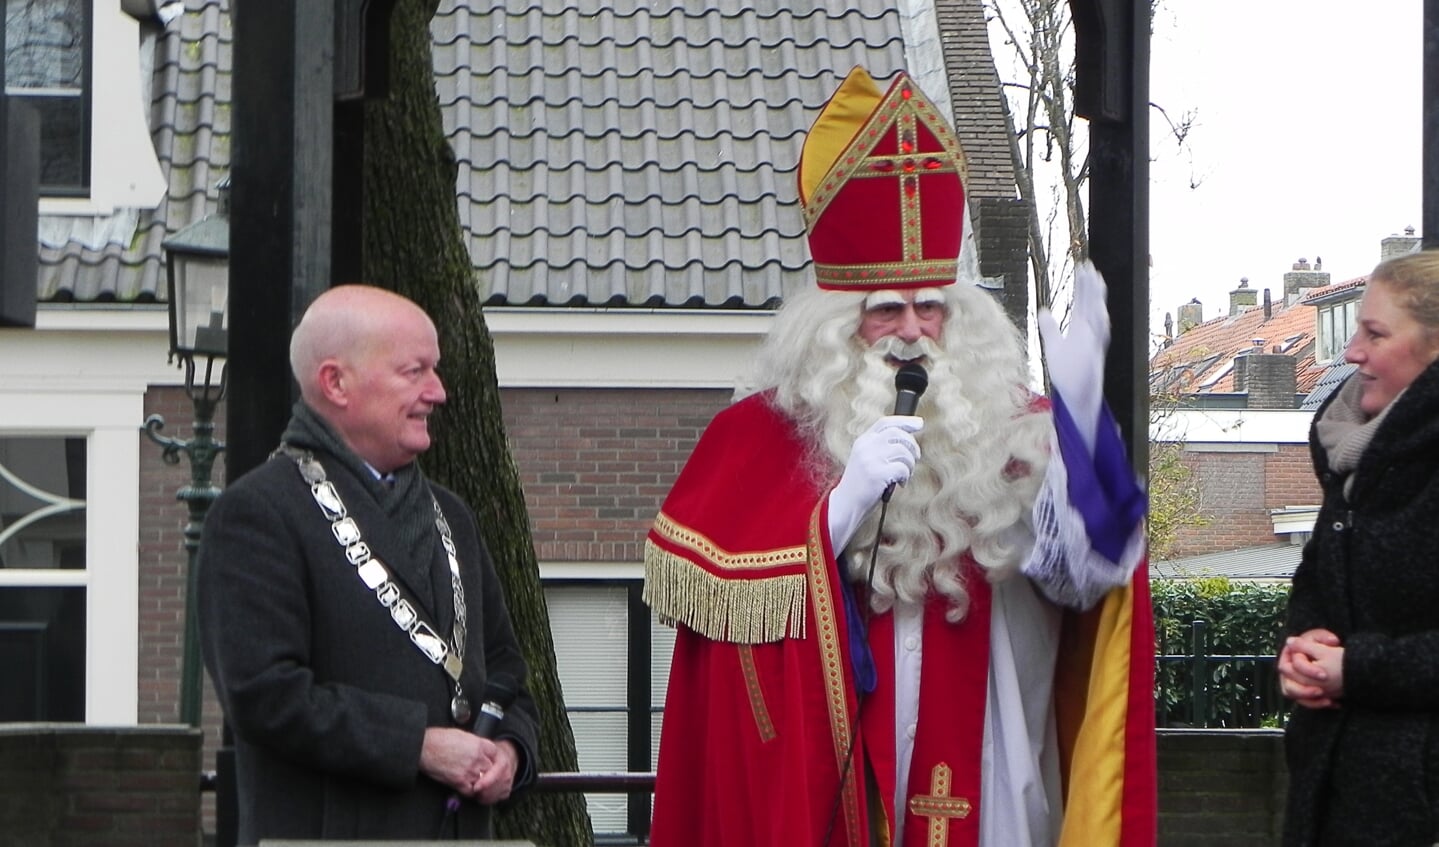 Burgemeester van Bennekom kijkt vol ontzag naar Sinterklaas die ieder jaar in weer en wind Werkhoven bezoekt. 